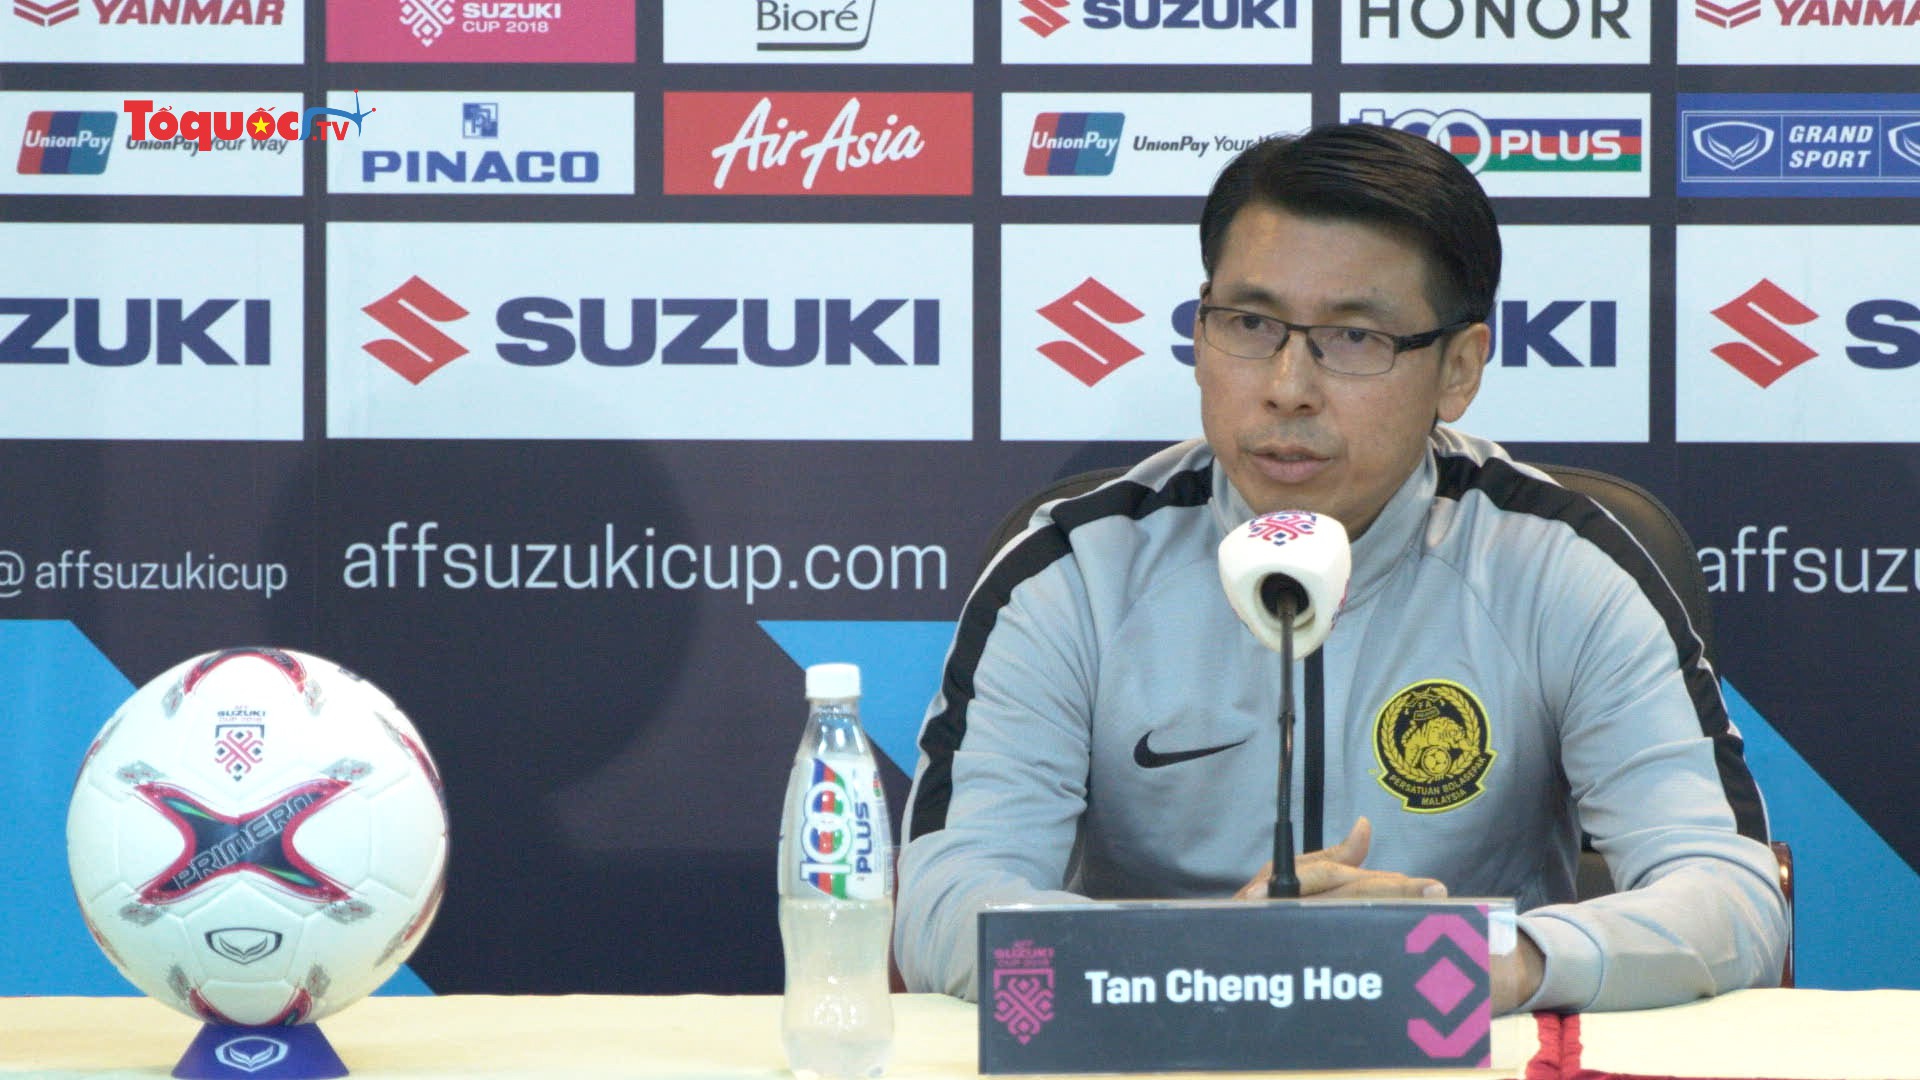 HLV Tan Cheng Hoe: Các cầu thủ Malaysia đều có đủ tự tin và chịu được áp lực tốt